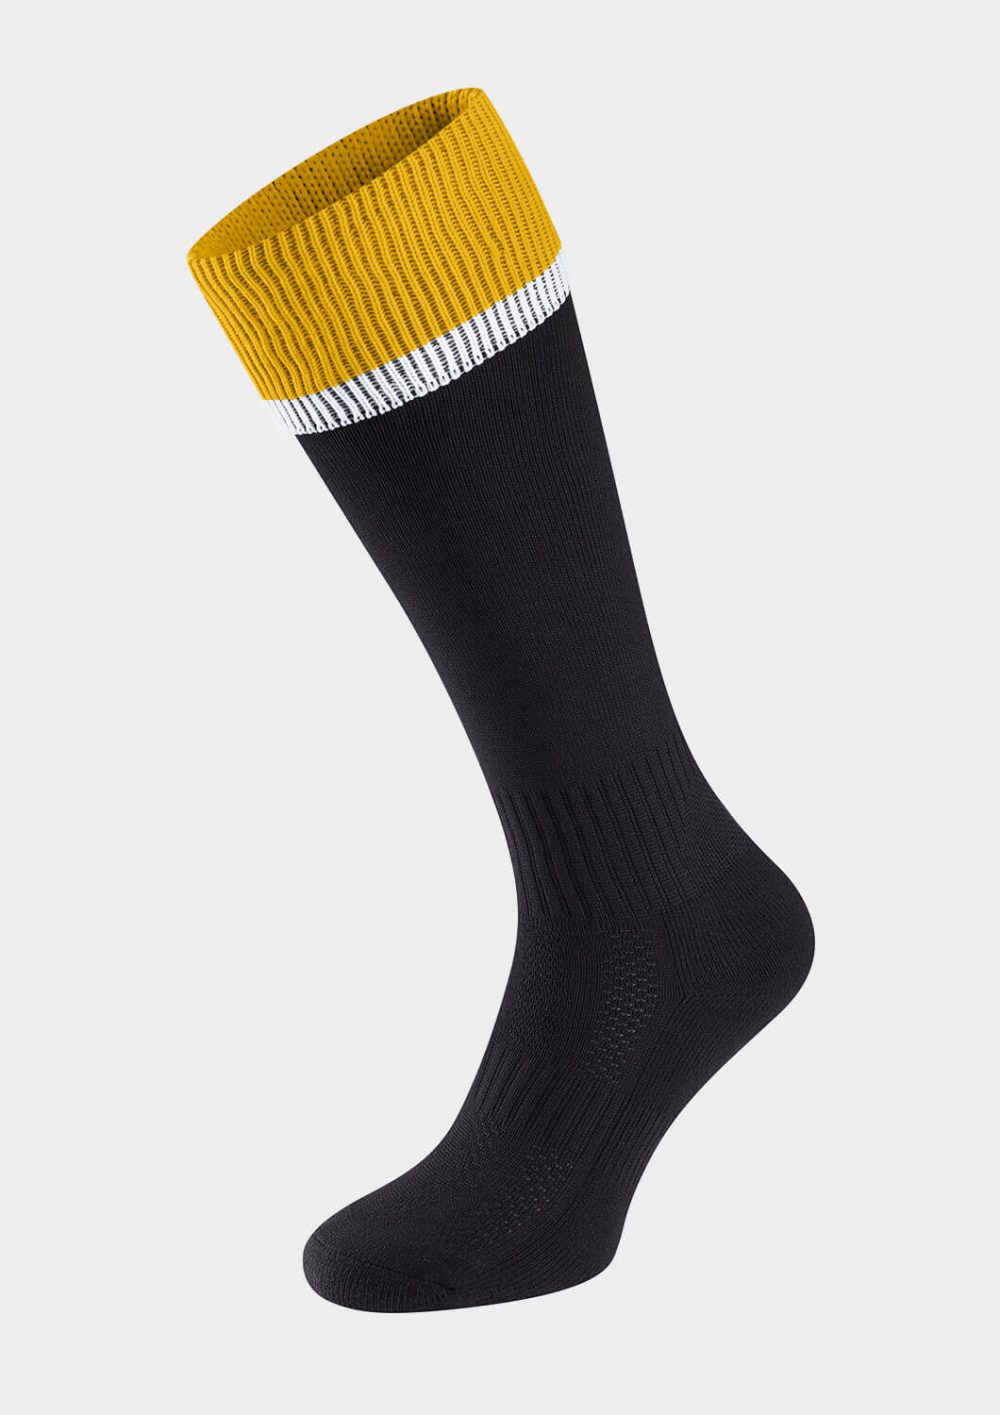 Black/Amber/White Socks